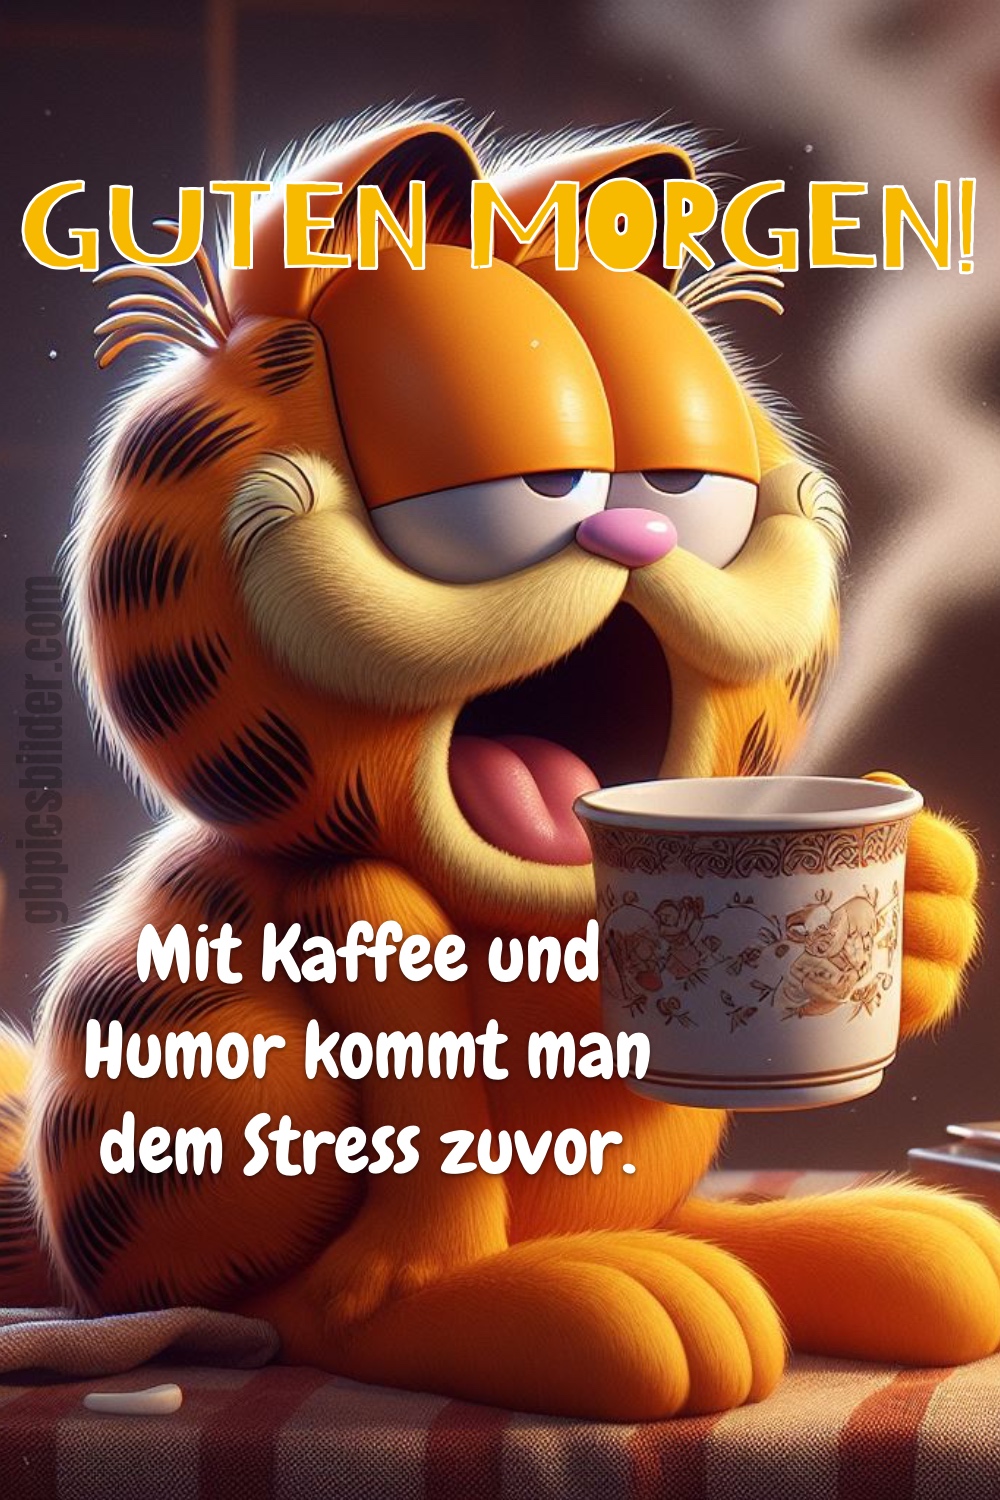 Guten Morgen mit kaffee und humor